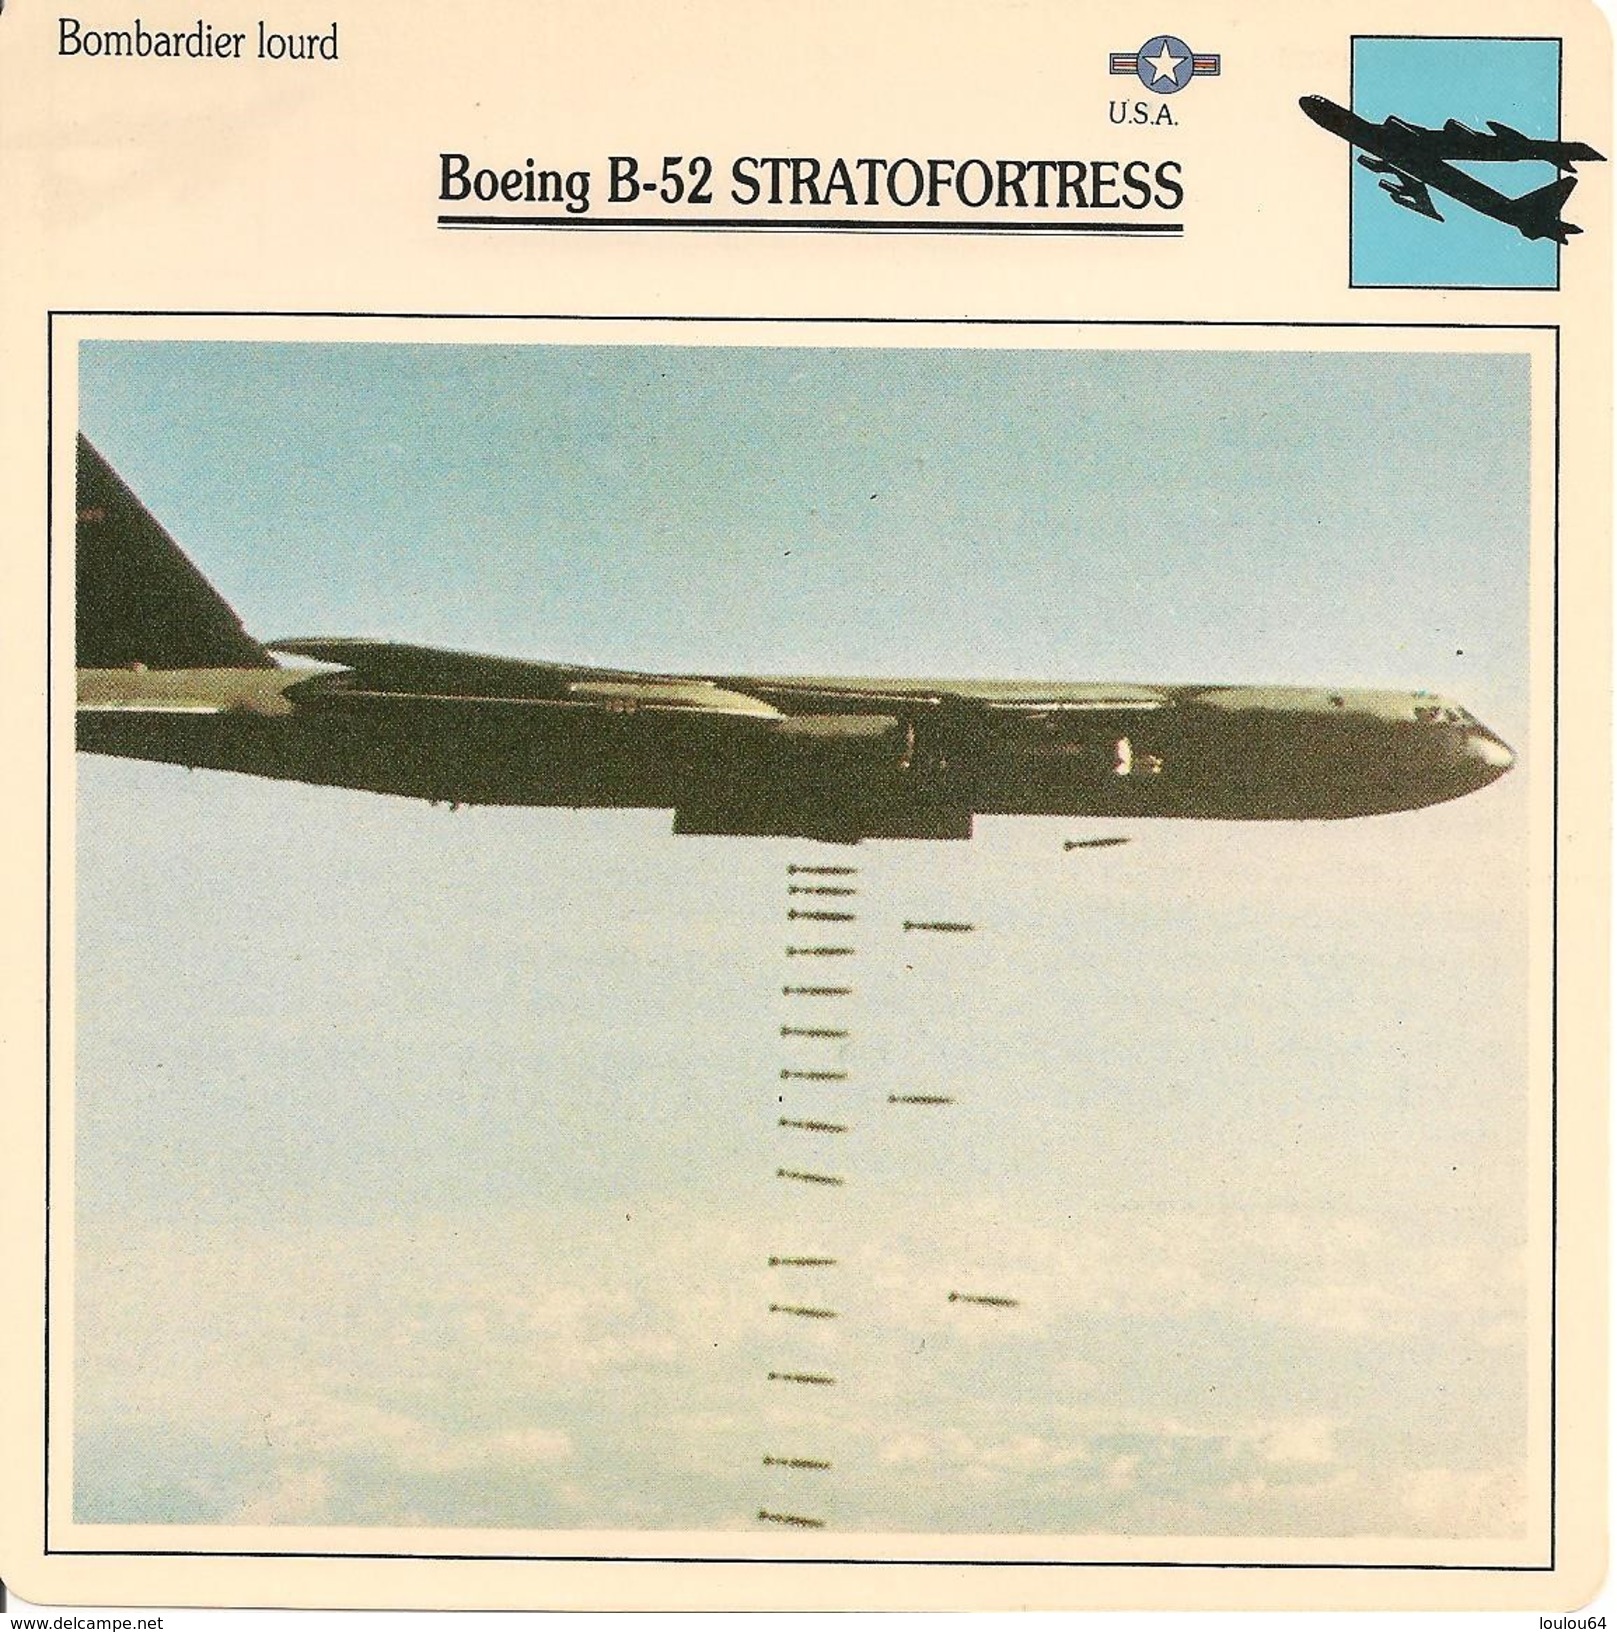 Fiches Illustrées - Caractéristiques Avions - Bombardier Lourd - Boeing B-52 STRATOFORTRESS - U.S.A. - (18)  - - Aviation